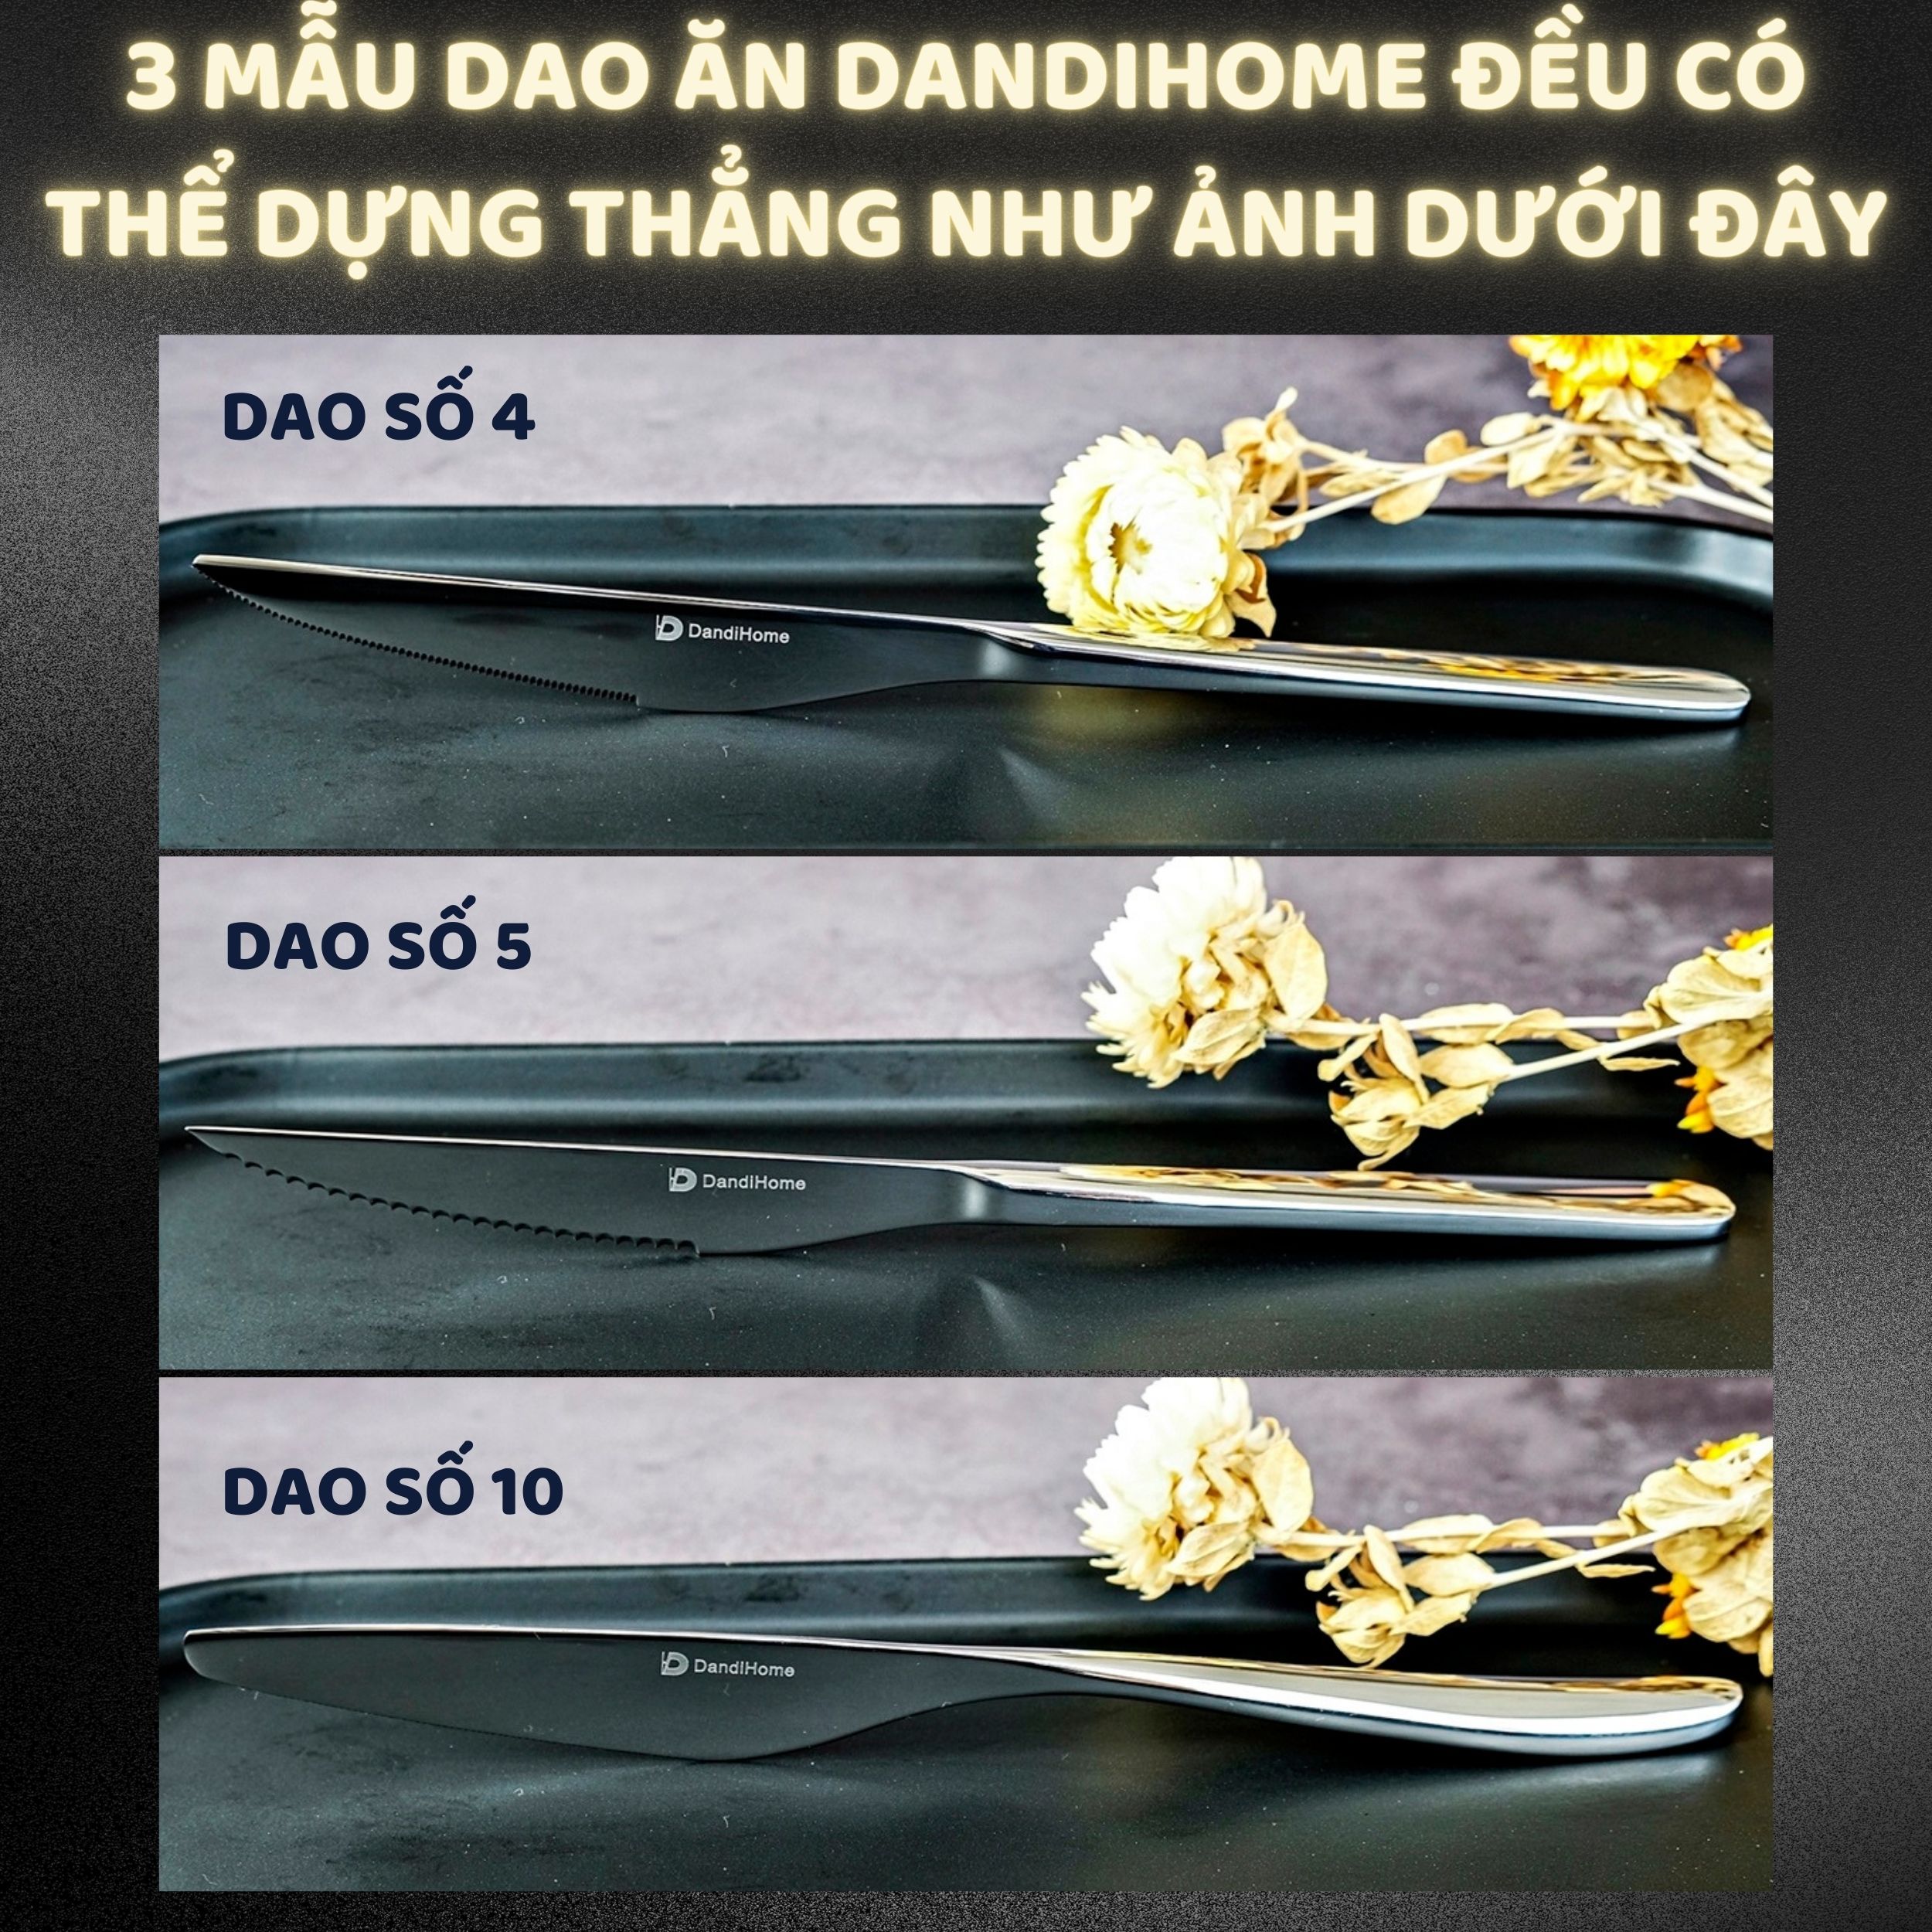 Bộ 6 dao ăn bít tết inox DandiHome 2020 cao cấp, sang trọng, tinh tế